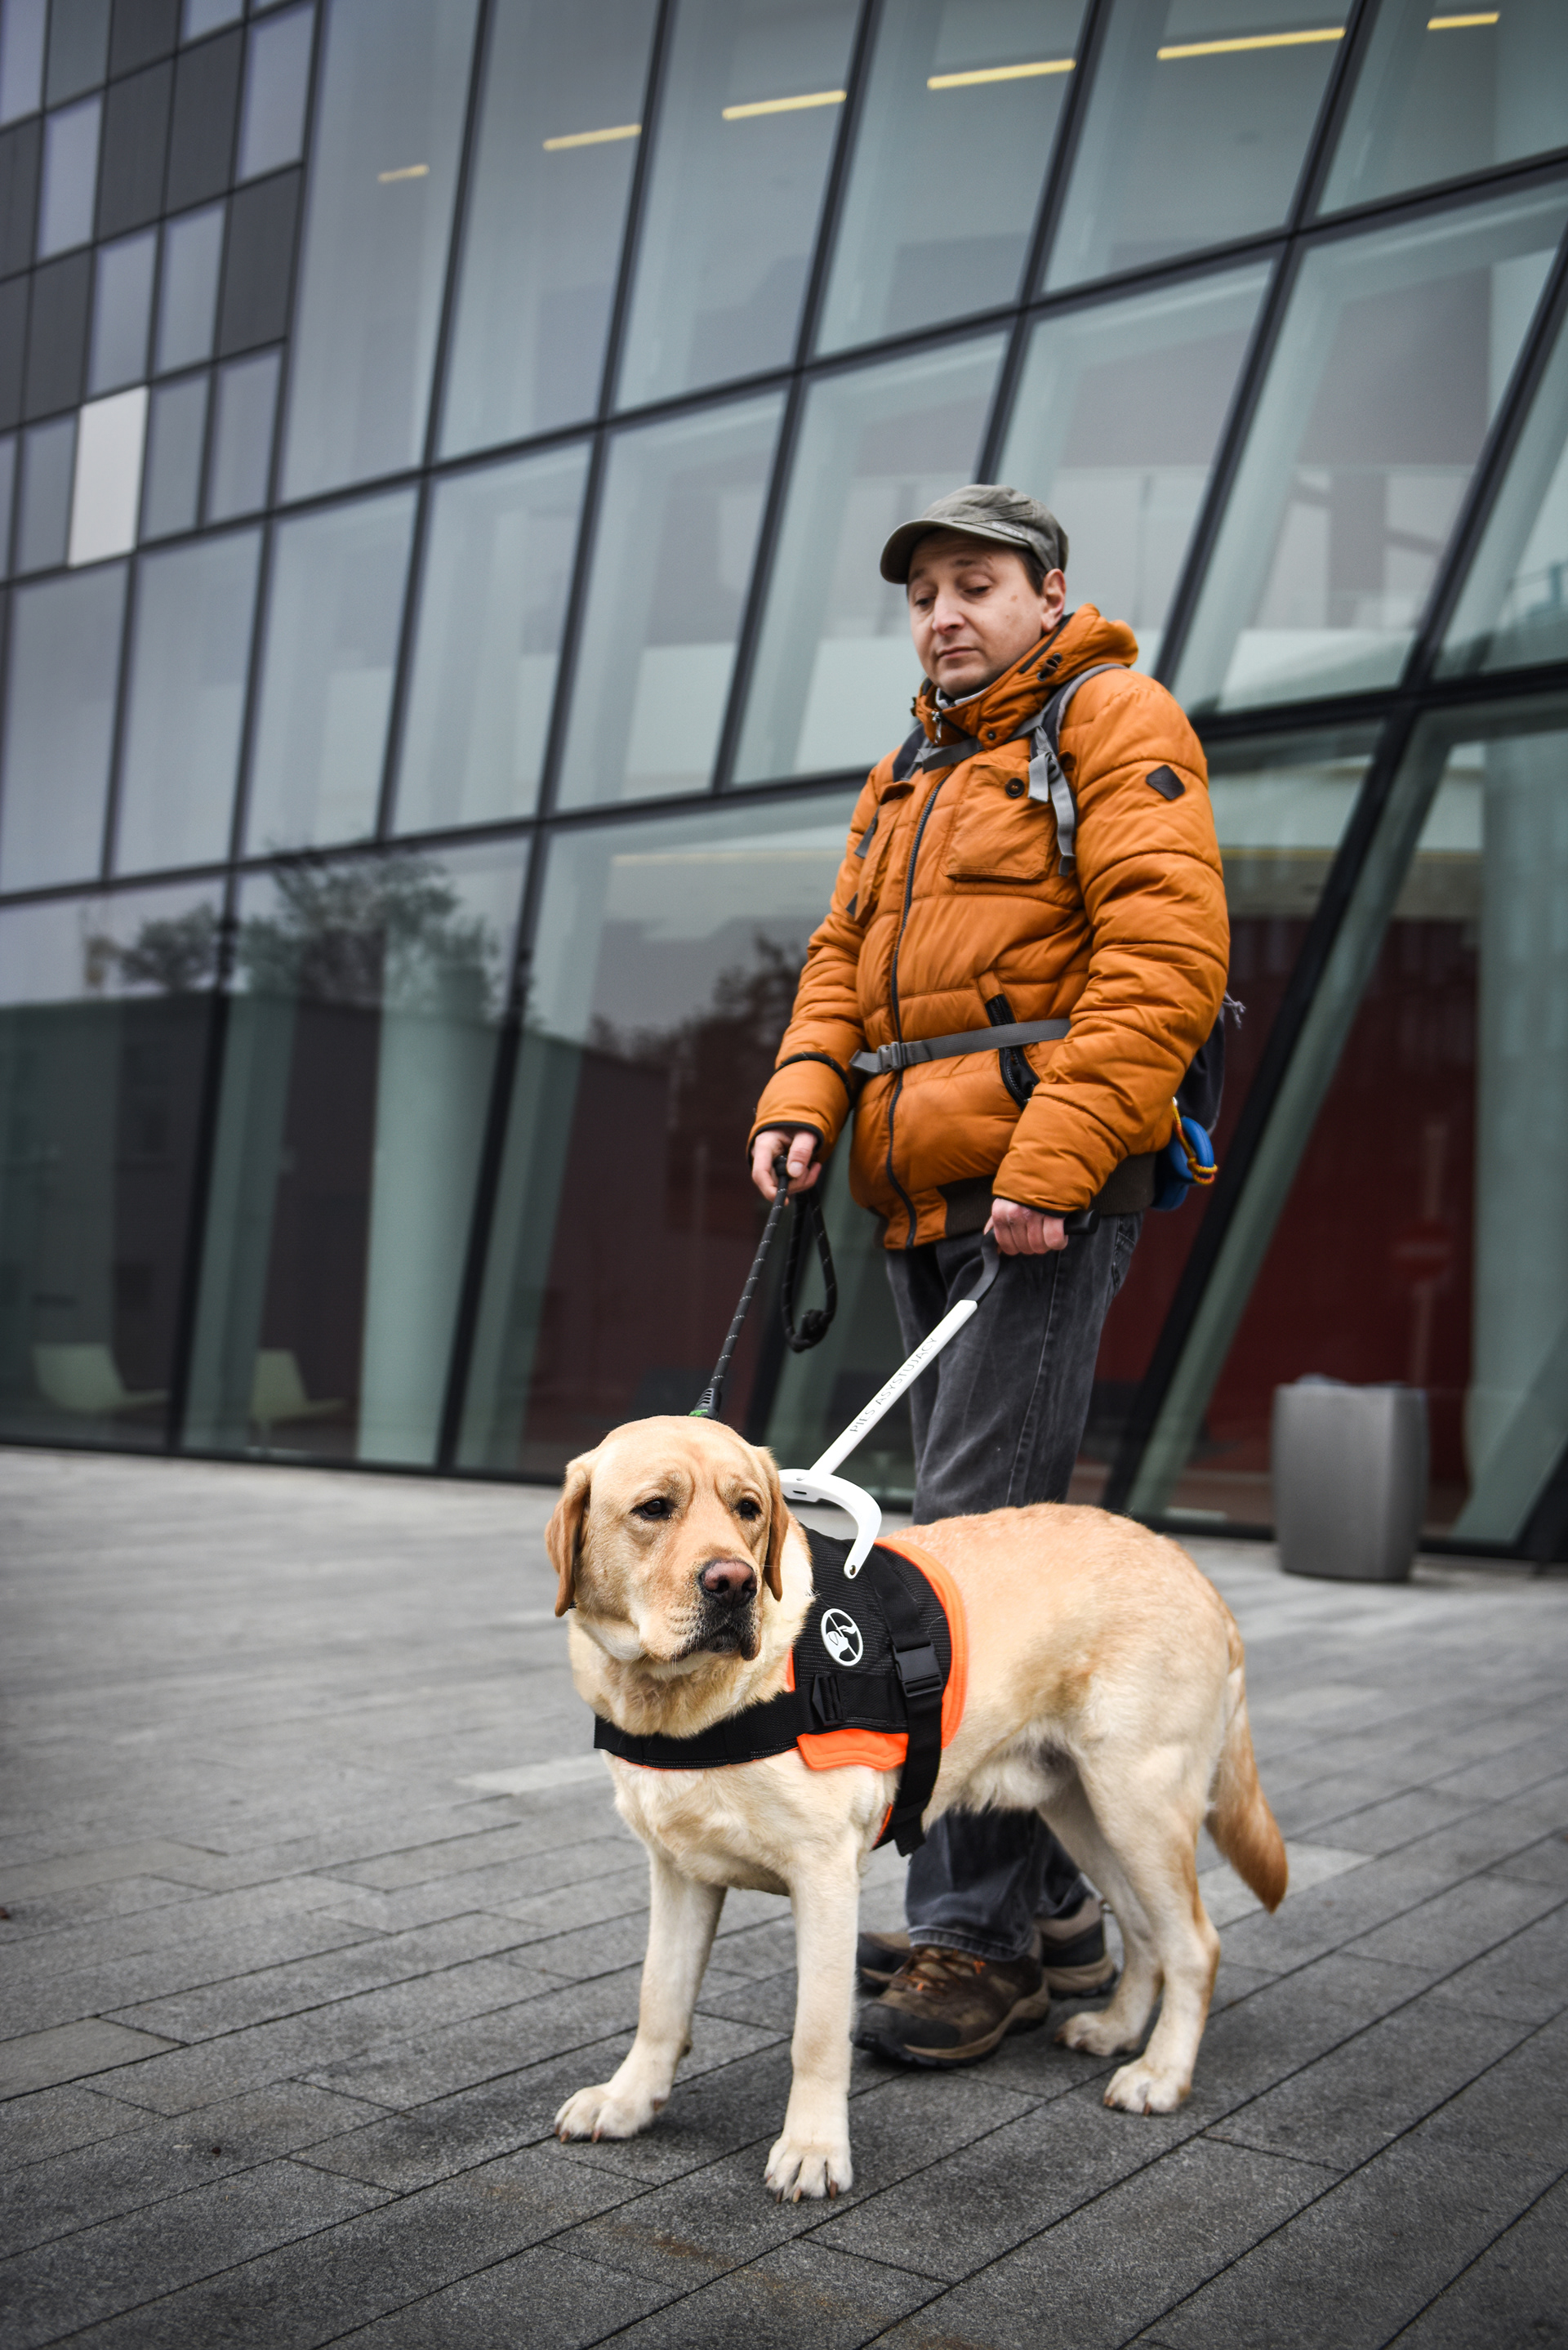 guidog harness 给导盲犬更加舒适的工作条件,更好的帮助残疾人